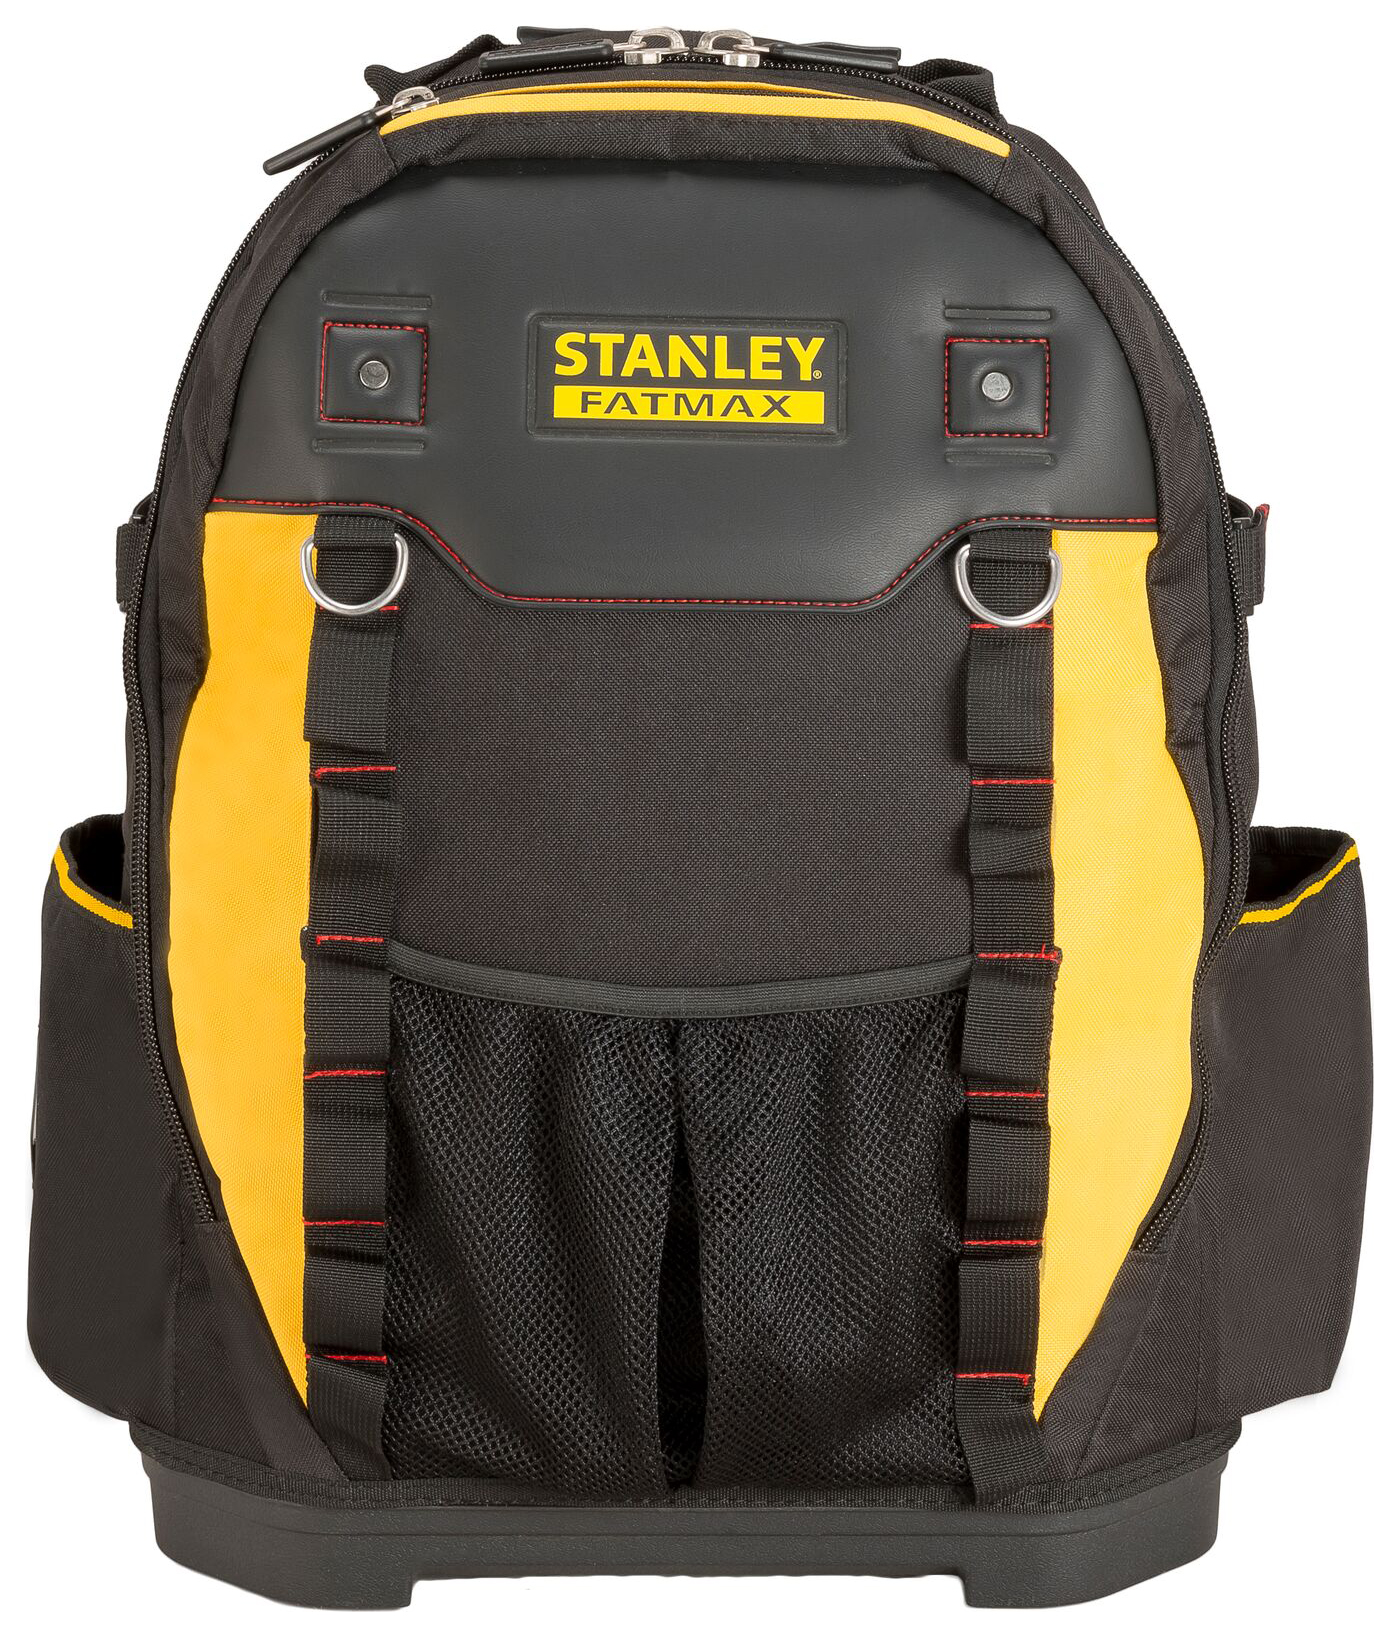 Stanley FatMax 1-95-611 Tool Backpack